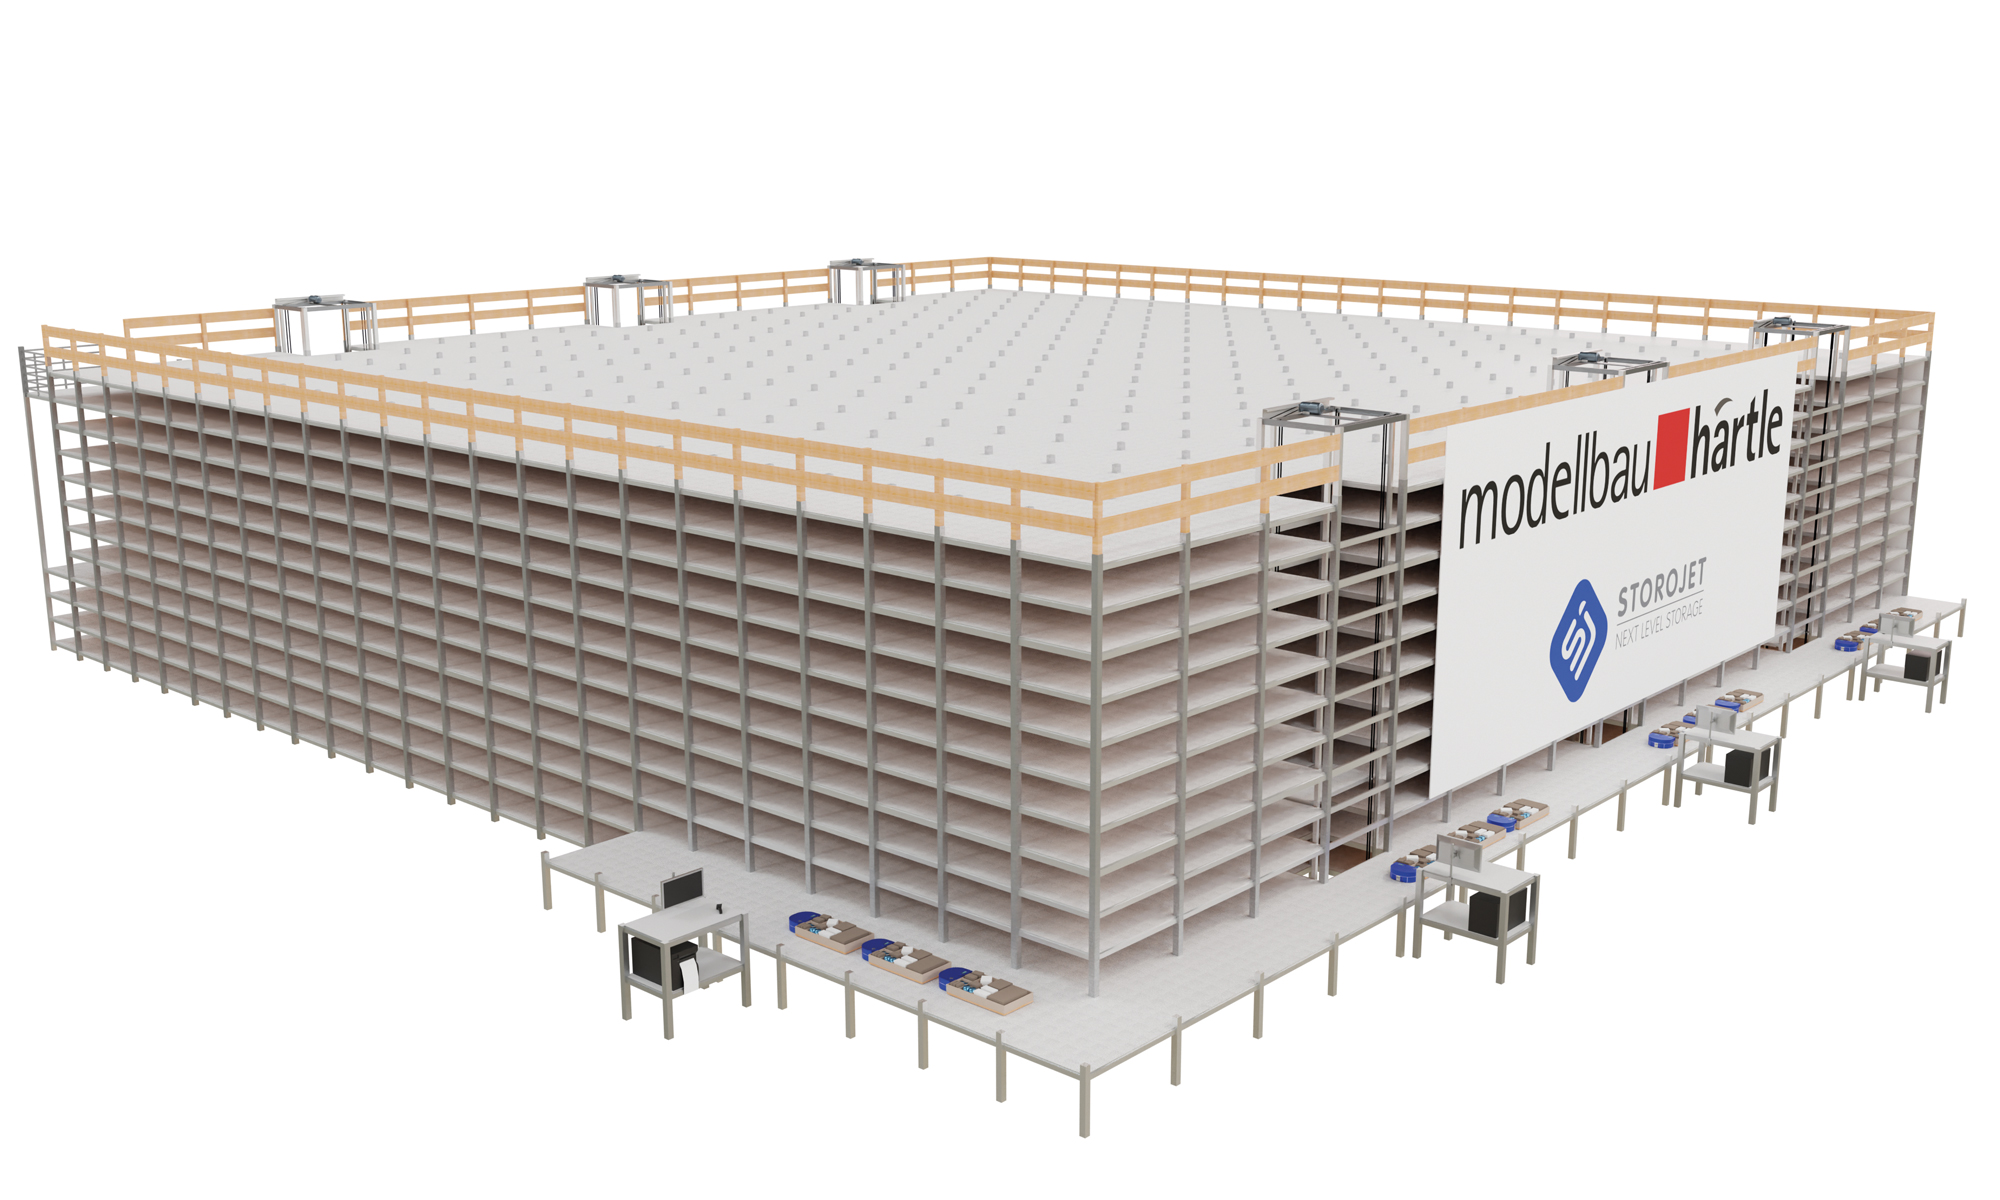 Vorankündigung STOROJET Next Level Storage Projekt:  Modellbau Härtle